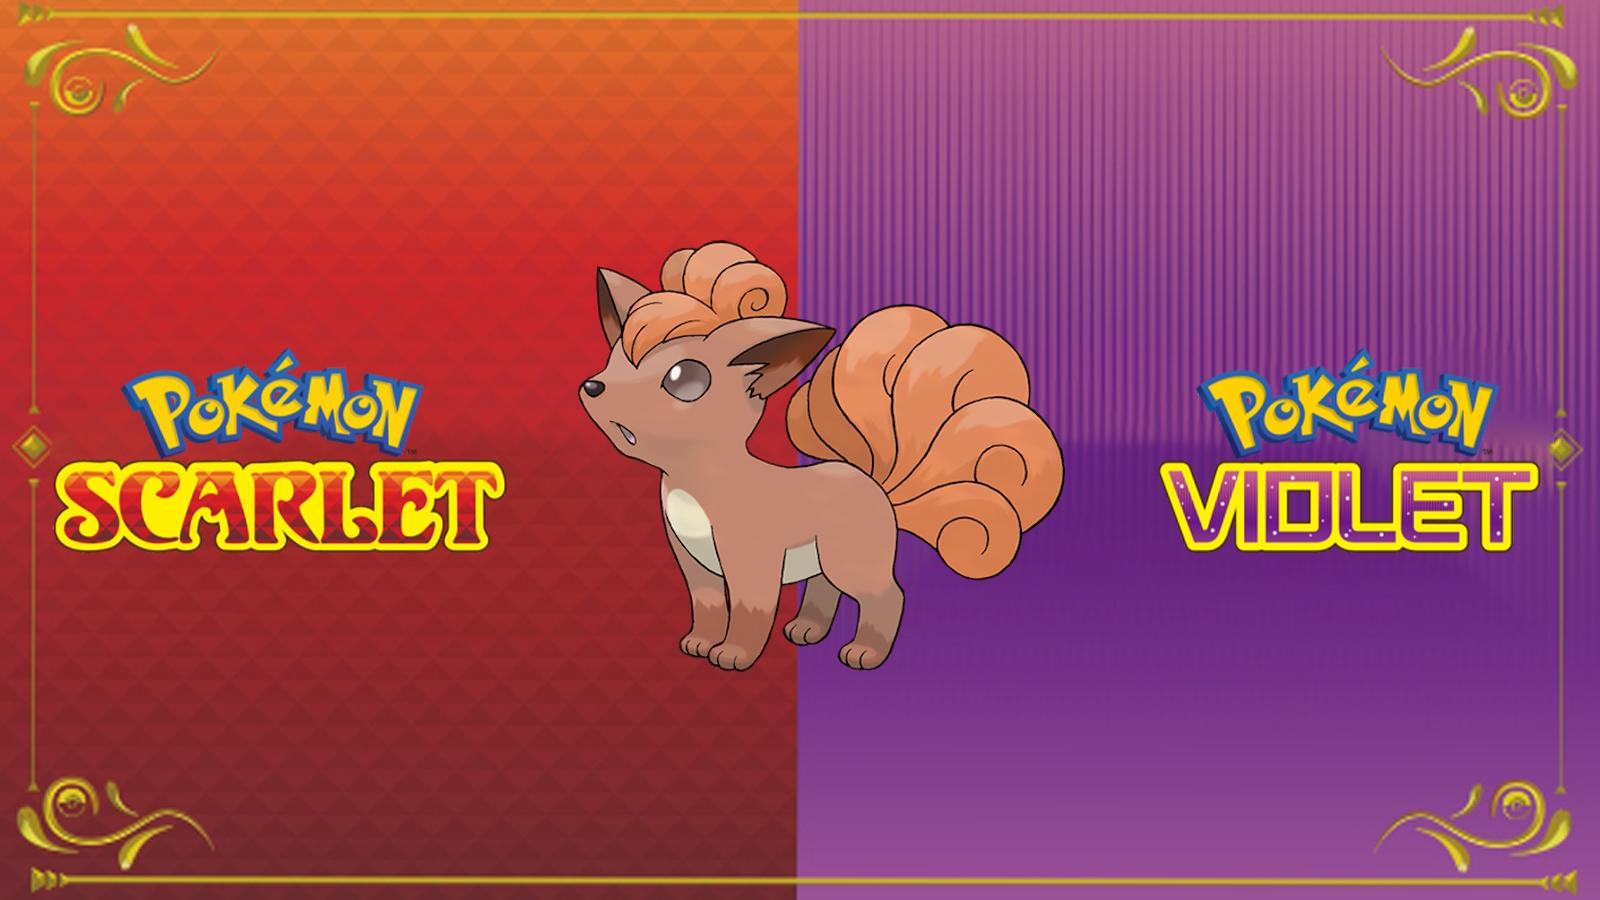 Vulpix Pokemon Scarlet and Violet